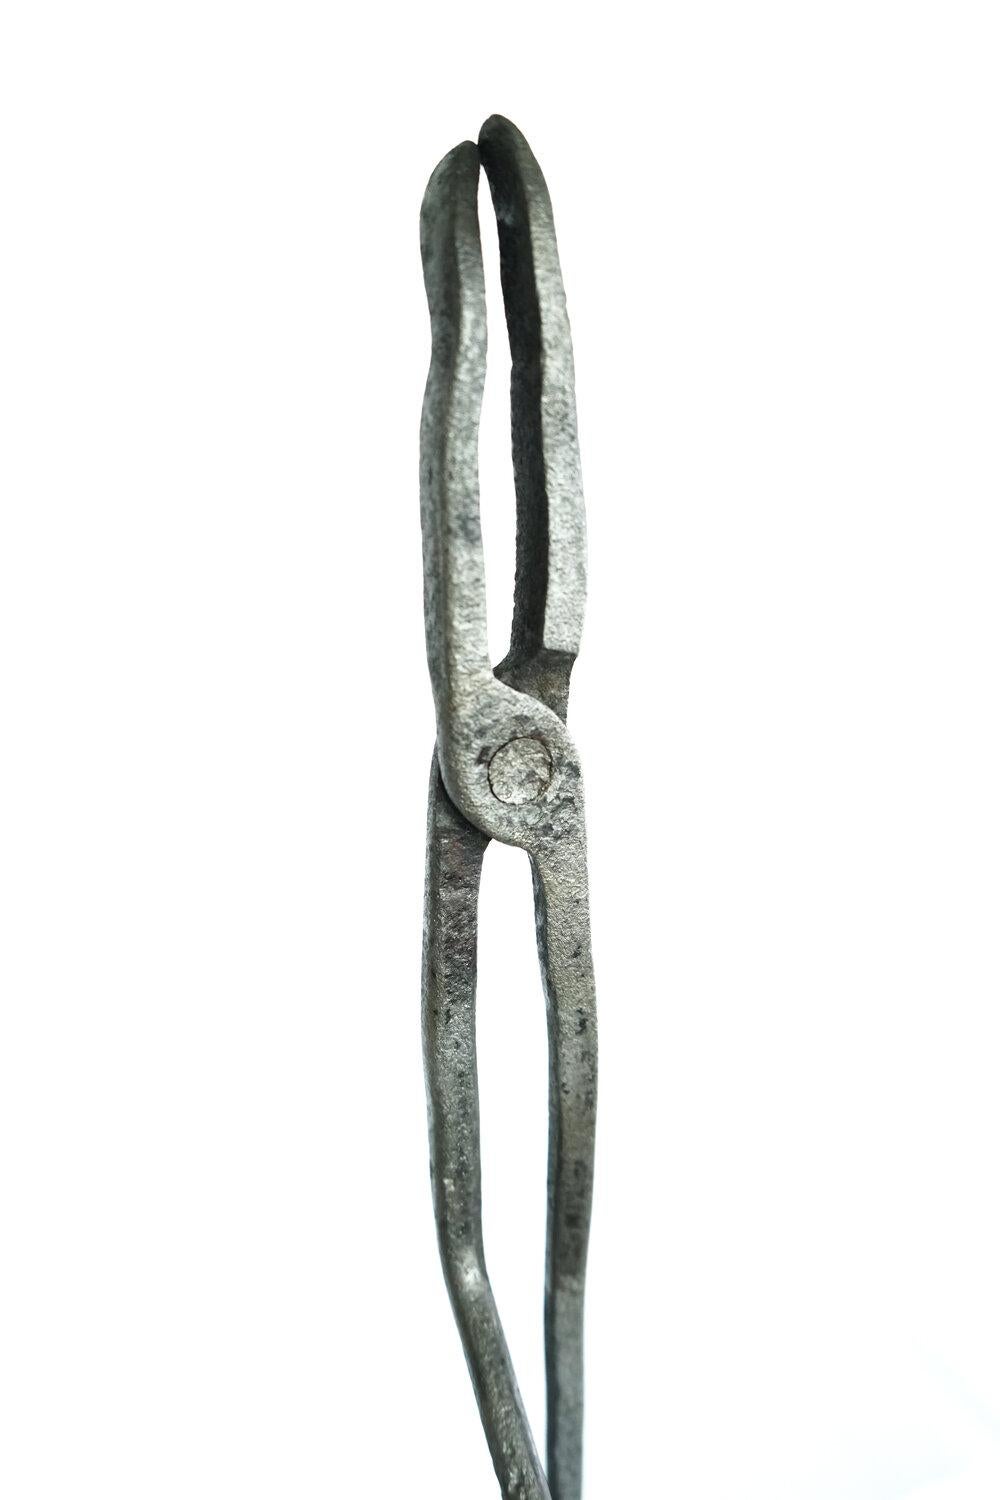 Sculpture de David Edelman
-) Bronze coulé, édition limitée
-) H 30